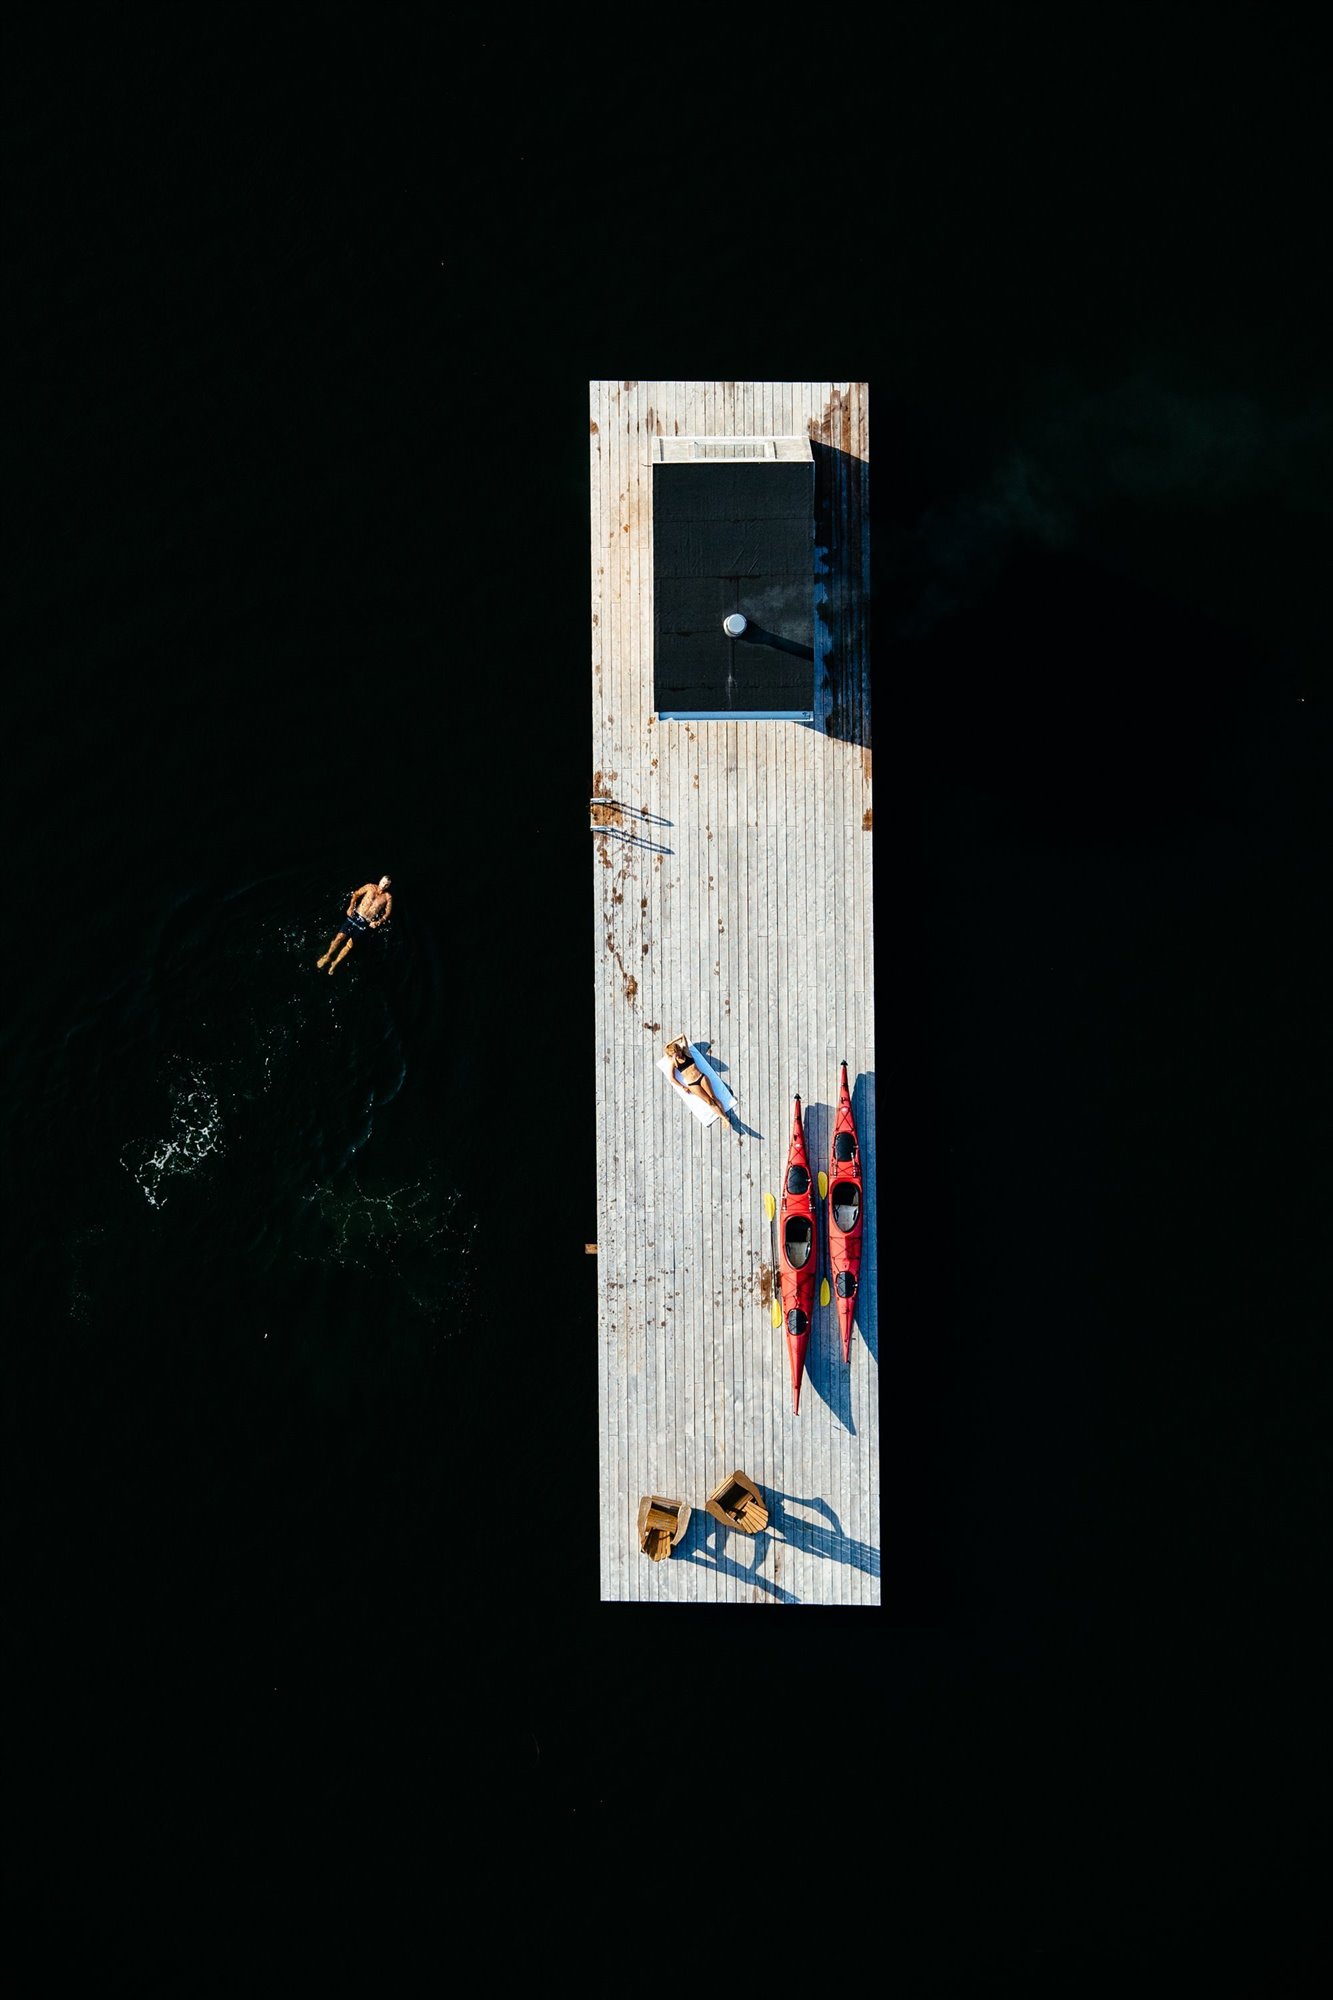 Cabaña moderna con Sauna de madera flotando en mitad de un lago vista aerea con hombre nadando